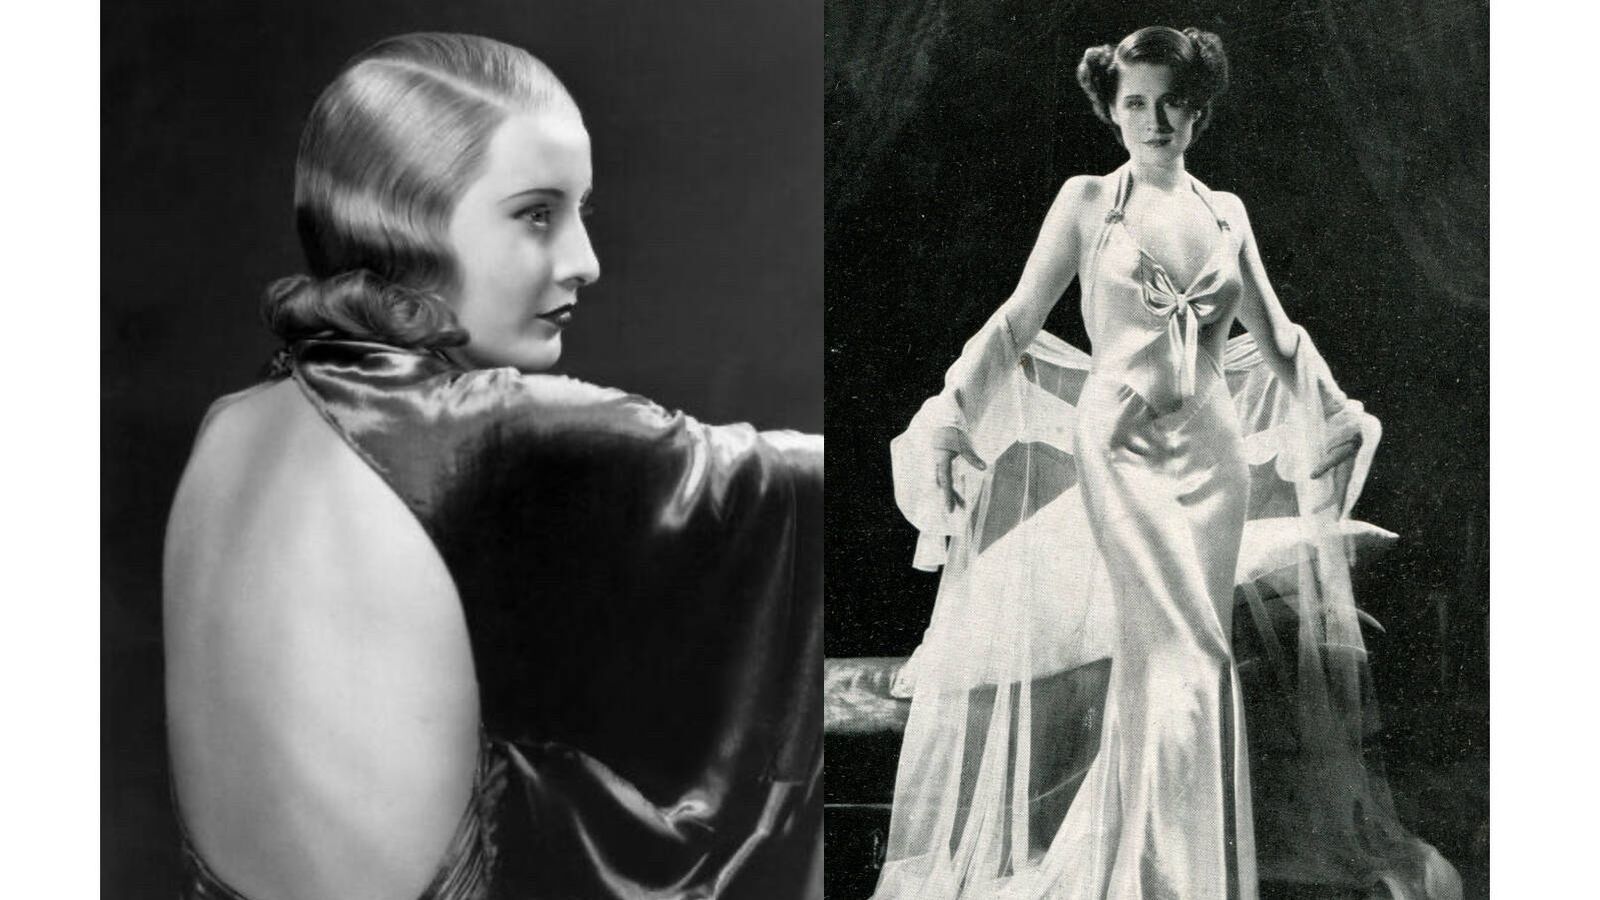 Barbara Stanwyck en 'Baby Face', de 1933 / Norma Shearer en 'Riptide', de 1934. (Wikimedia)